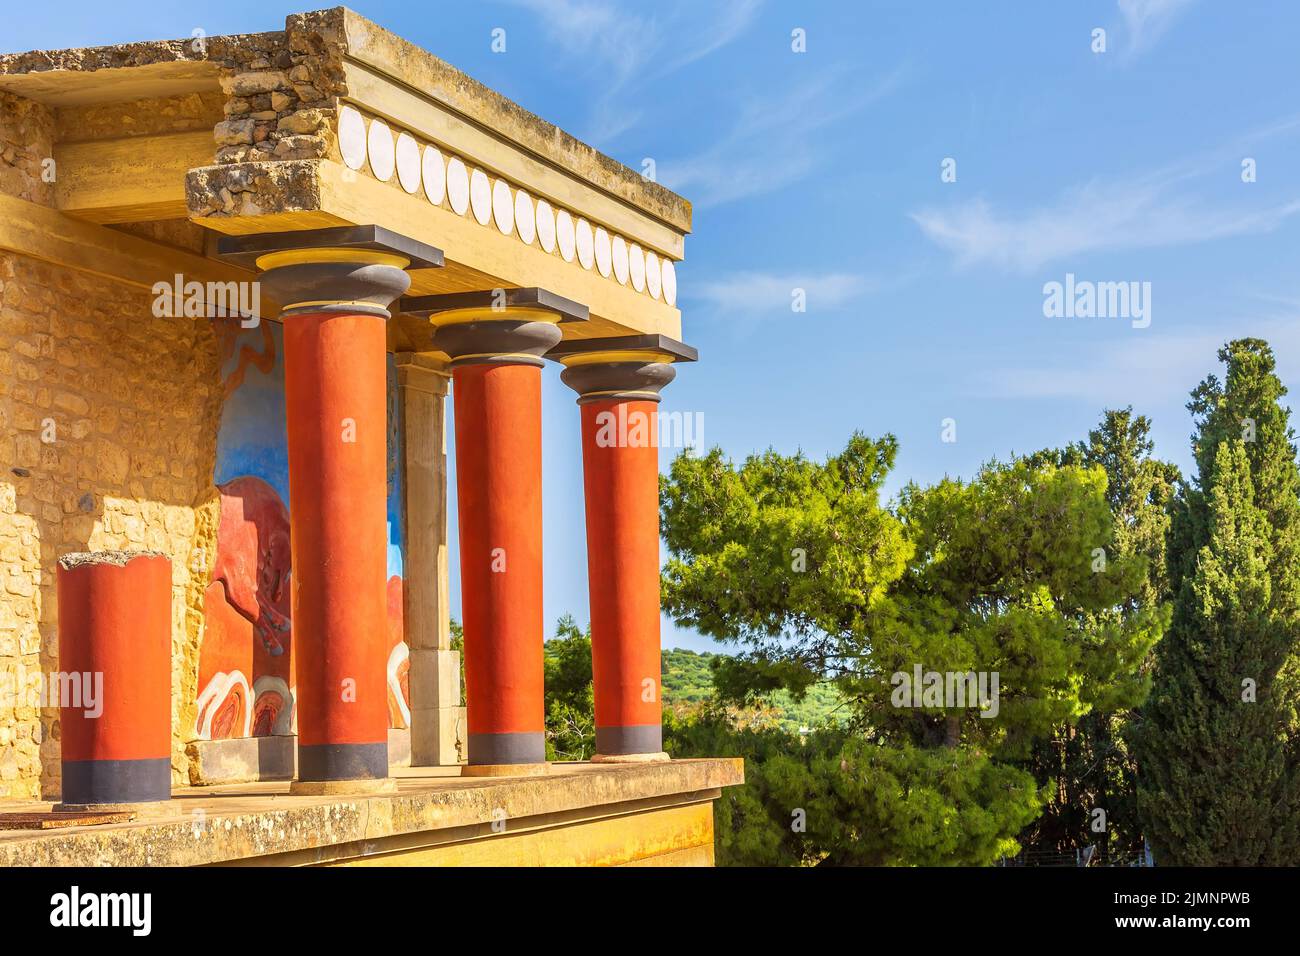 Knossos, ruines de Crète du Palais Minoen, Grèce Banque D'Images